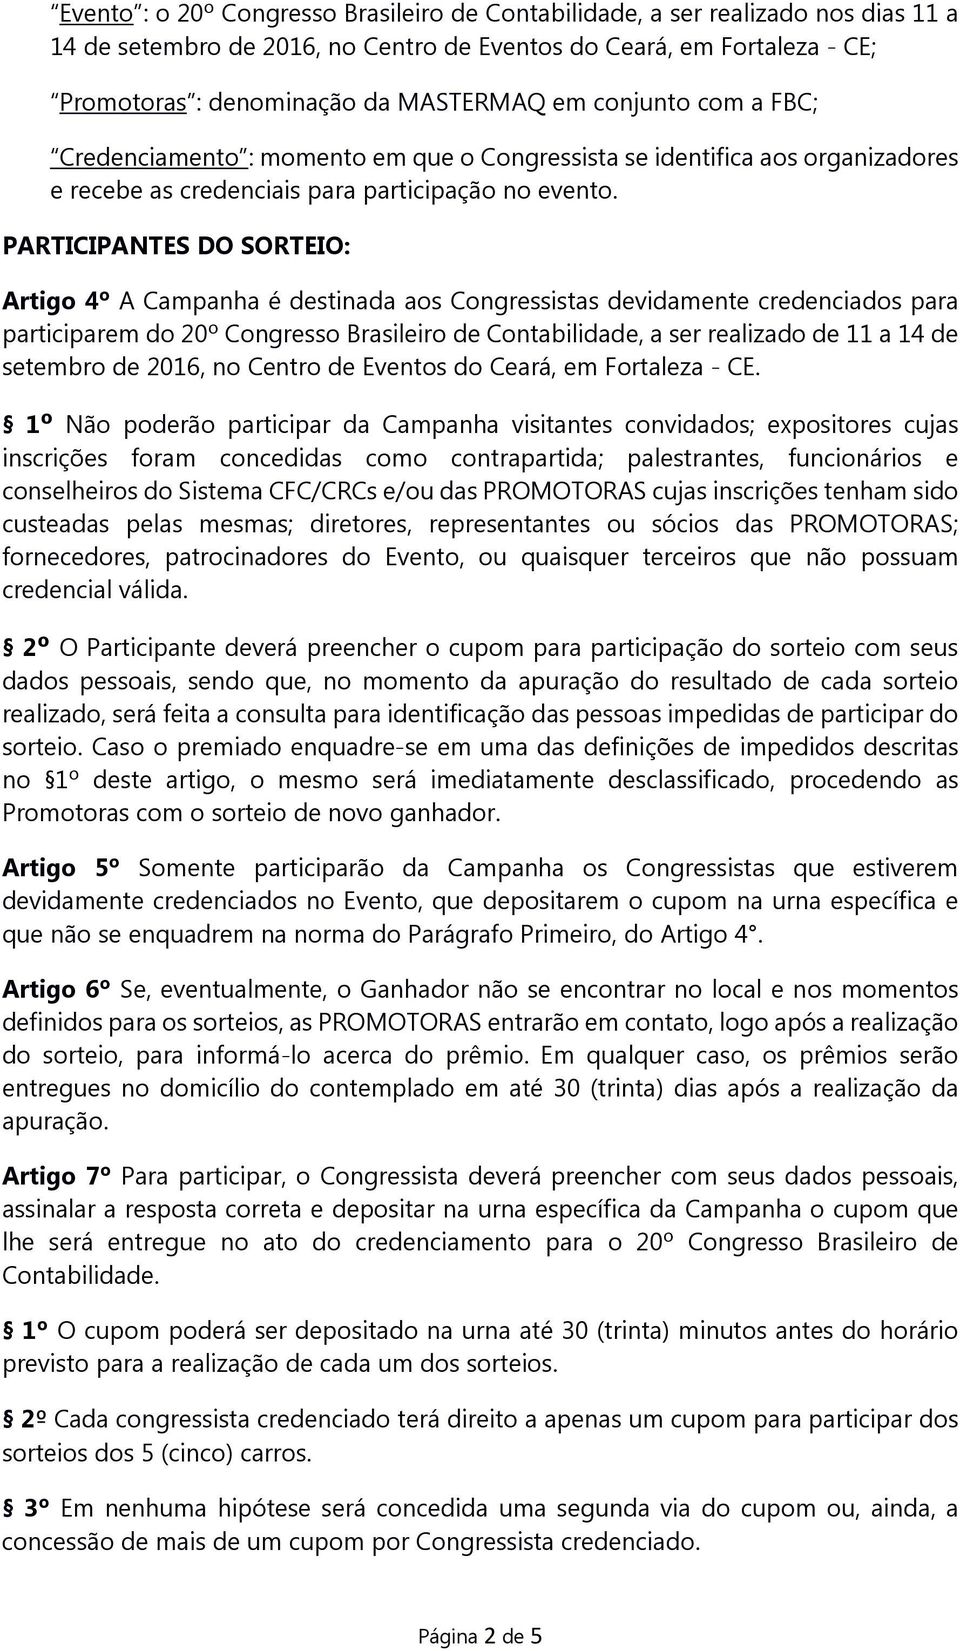 PARTICIPANTES DO SORTEIO: Artigo 4º A Campanha é destinada aos Congressistas devidamente credenciados para participarem do 20º Congresso Brasileiro de Contabilidade, a ser realizado de 11 a 14 de